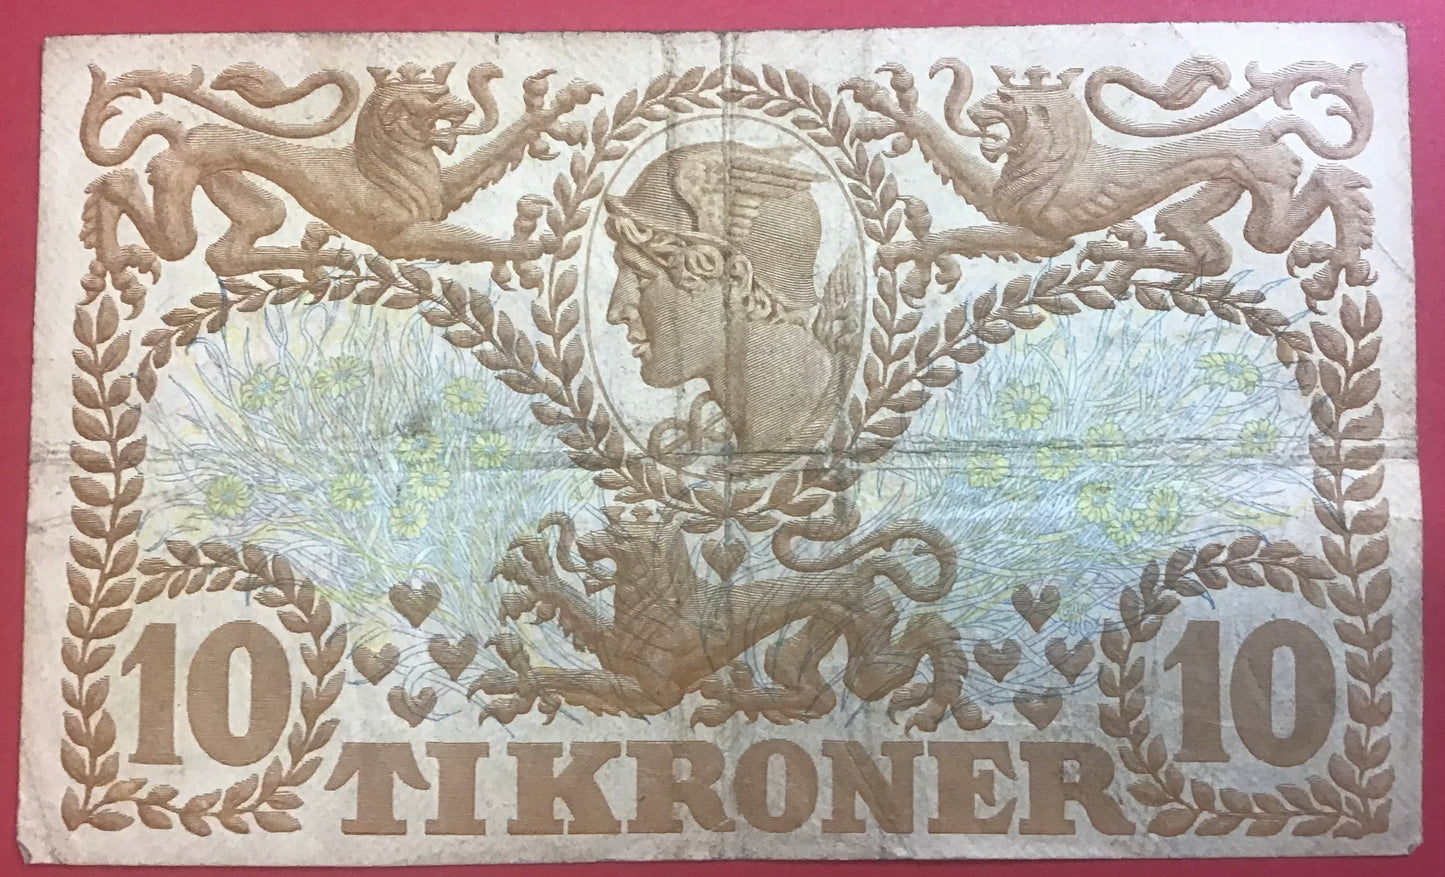 Danmark - 10 Kroner 1937 (M 5808318)Sieg#105 Kvalitet 1